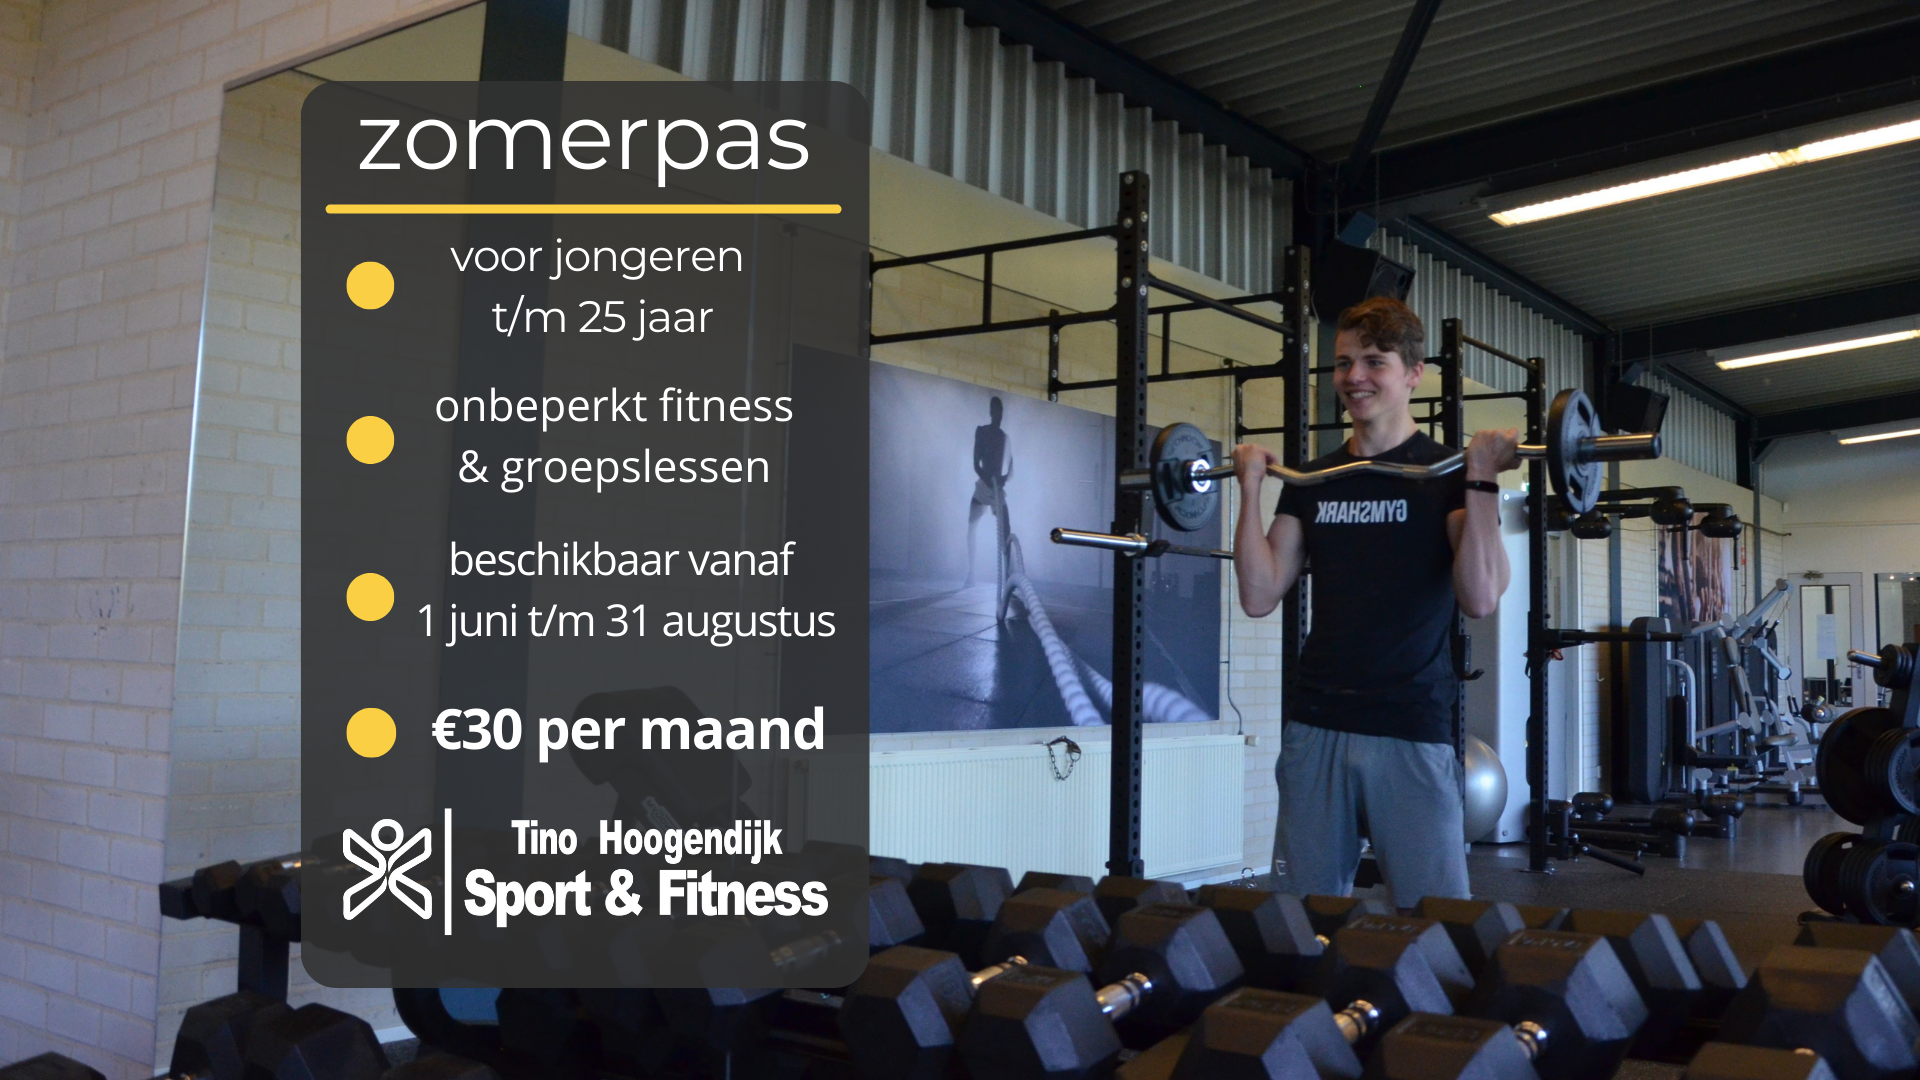 Kom deze zomer lekker sporten bij Tino Hoogendijk Sport & Fitness